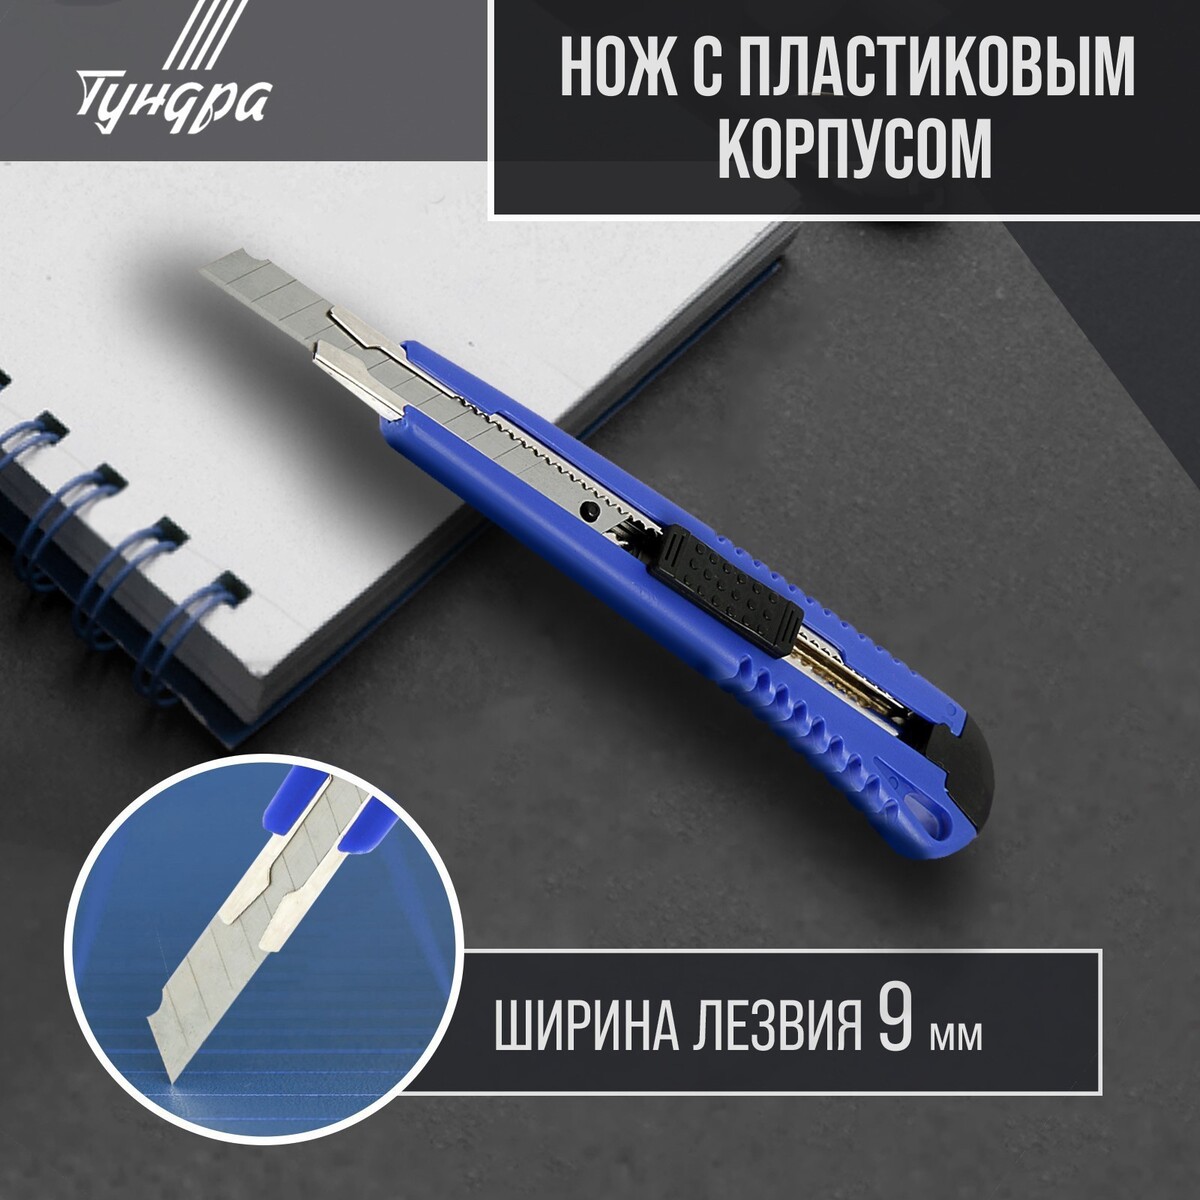 Нож универсальный тундра, пластиковый корпус, металлическая направляющая, 9 мм нож универсальный тундра металлическая направляющая винтовой фиксатор 18 мм